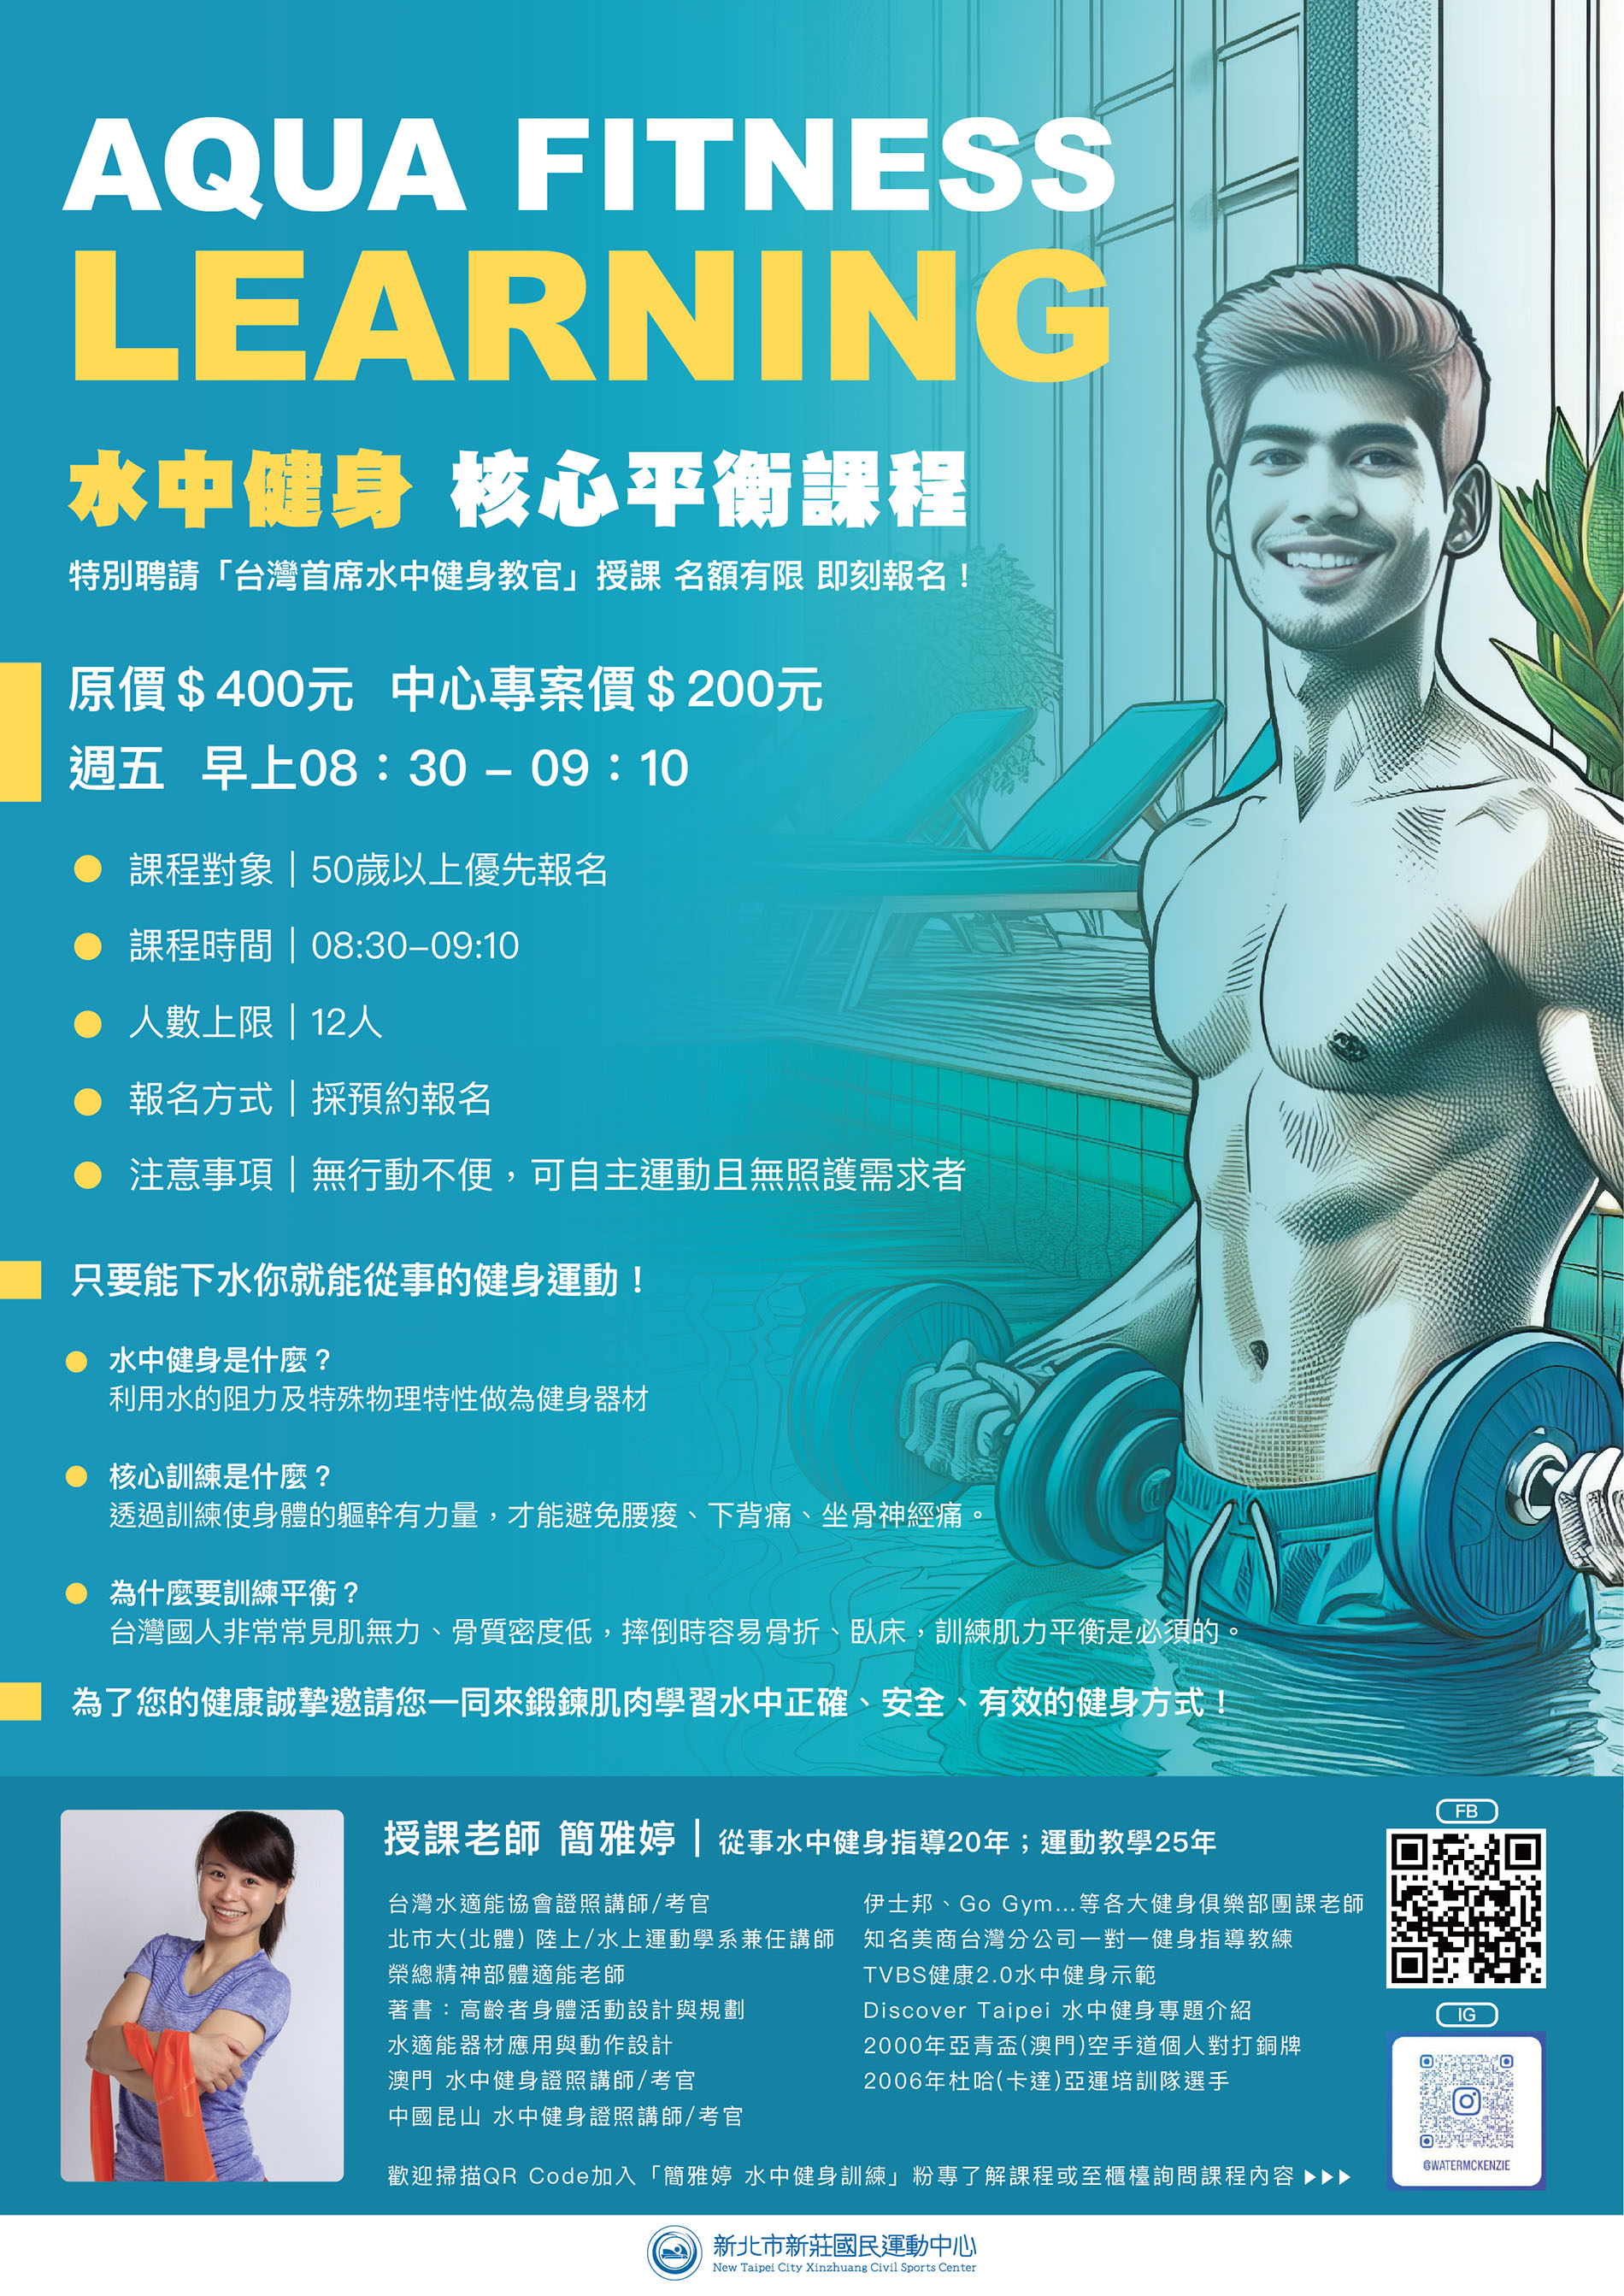 最新消息-【公告】特別聘請「台灣首席水中健身教官」授課，為了您的健康誠摯邀請您一同來鍛鍊肌肉學習水中正確、安全、有效的健身方式！